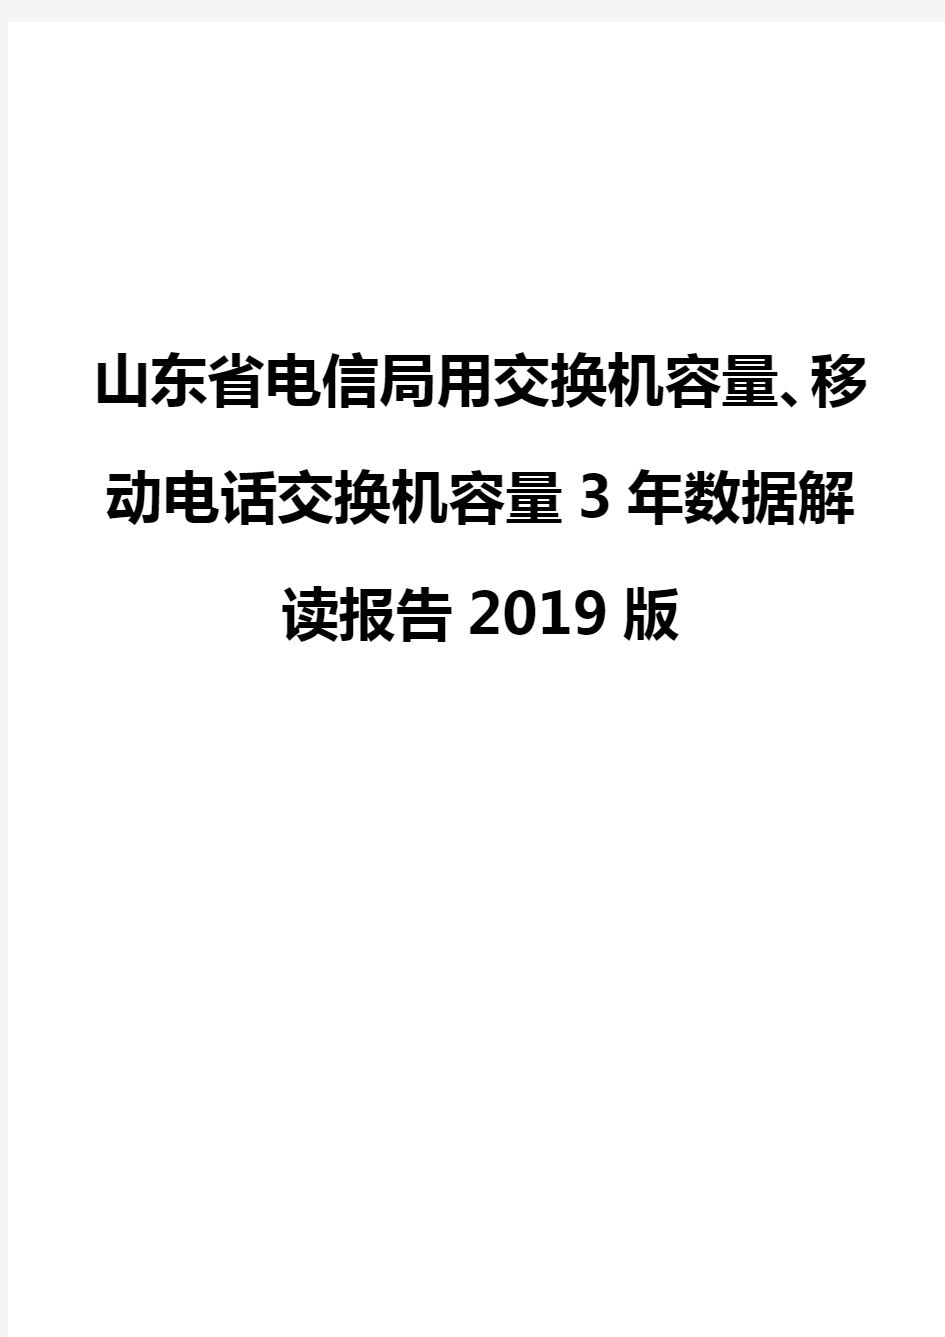 山东省电信局用交换机容量、移动电话交换机容量3年数据解读报告2019版